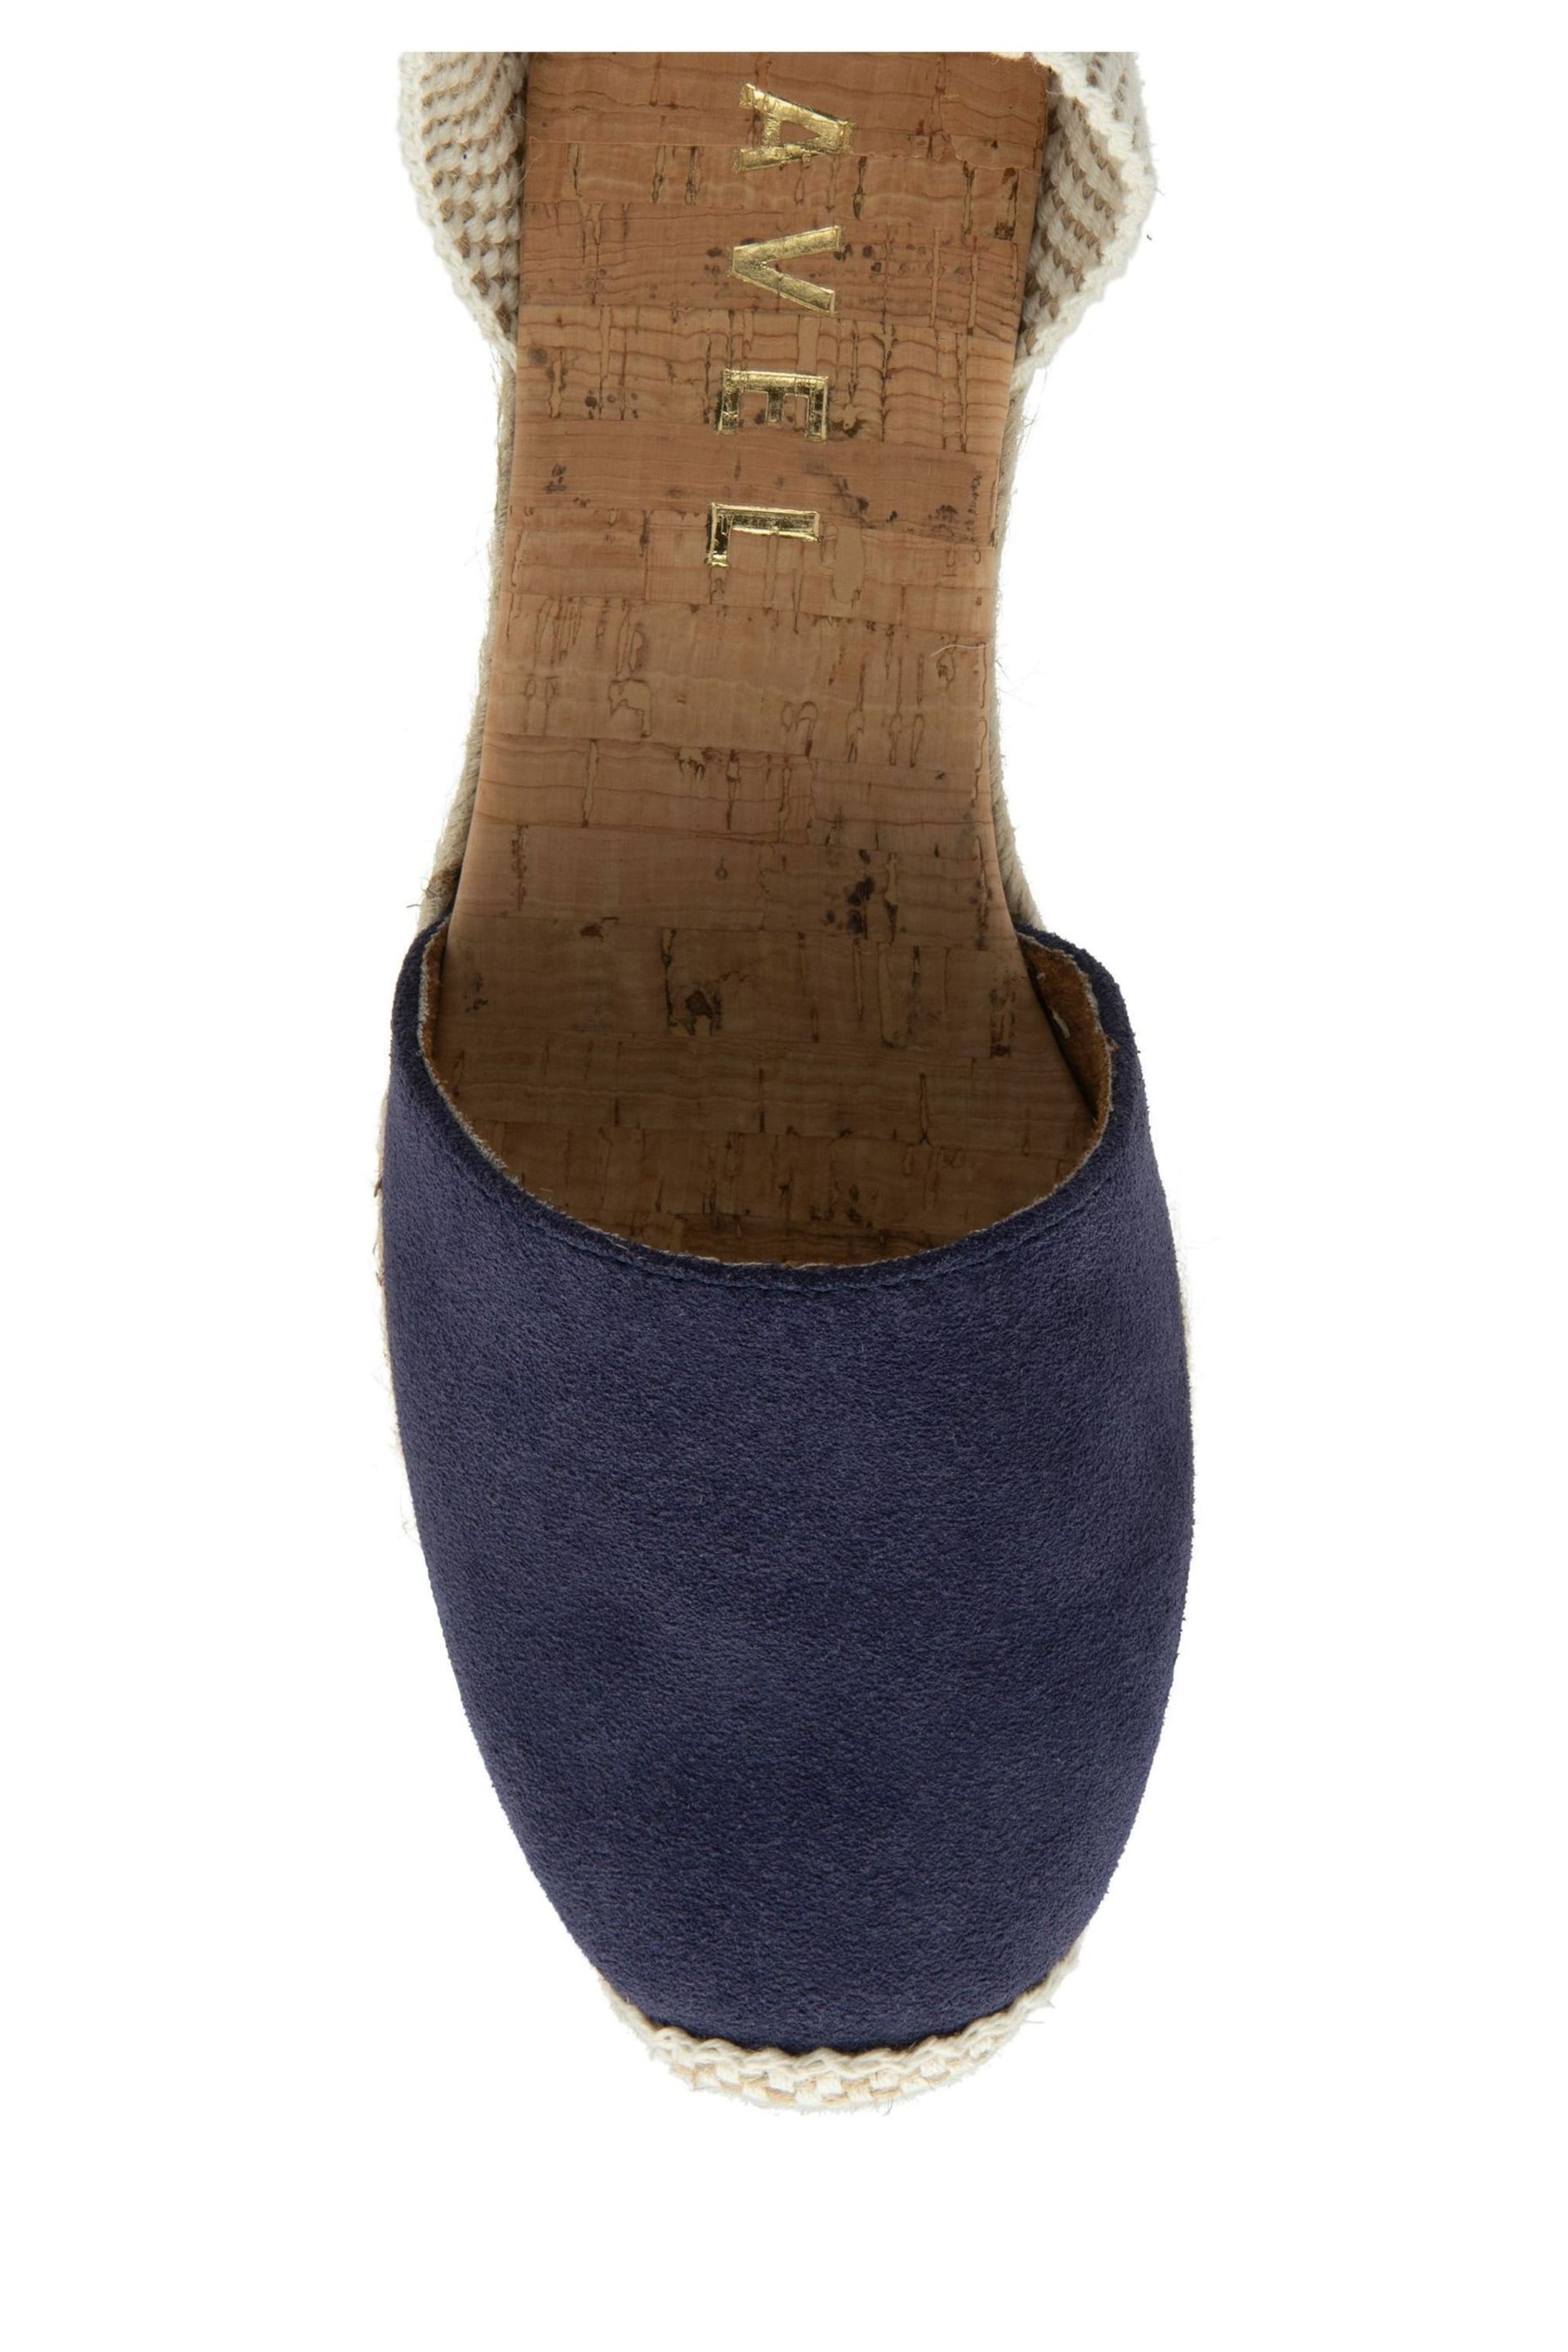 Ravel Blue Espadrilles Wedges Sandals - Image 4 of 4